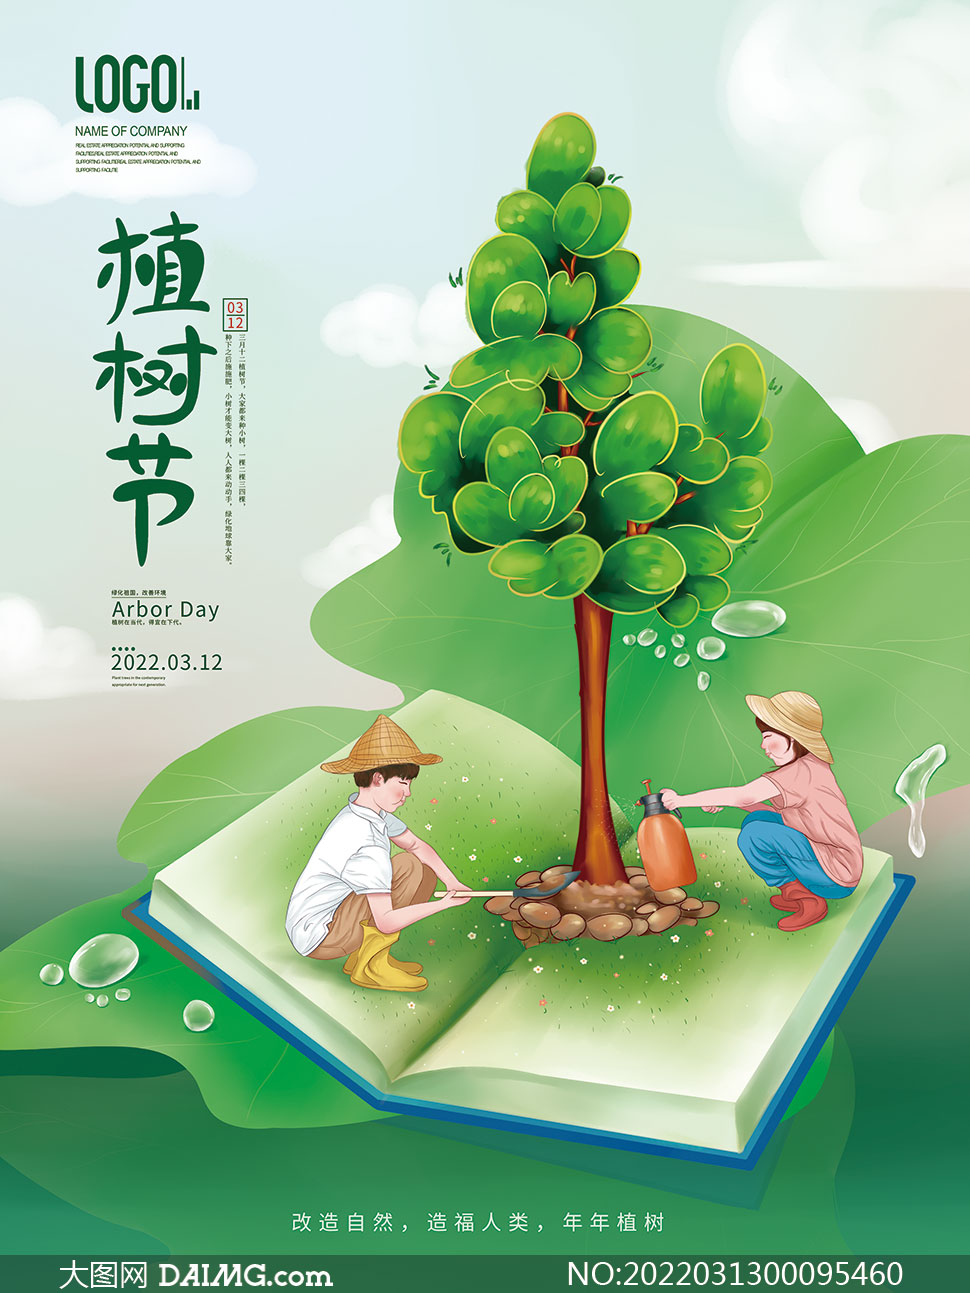 创意312植树节宣传海报设计psd素材